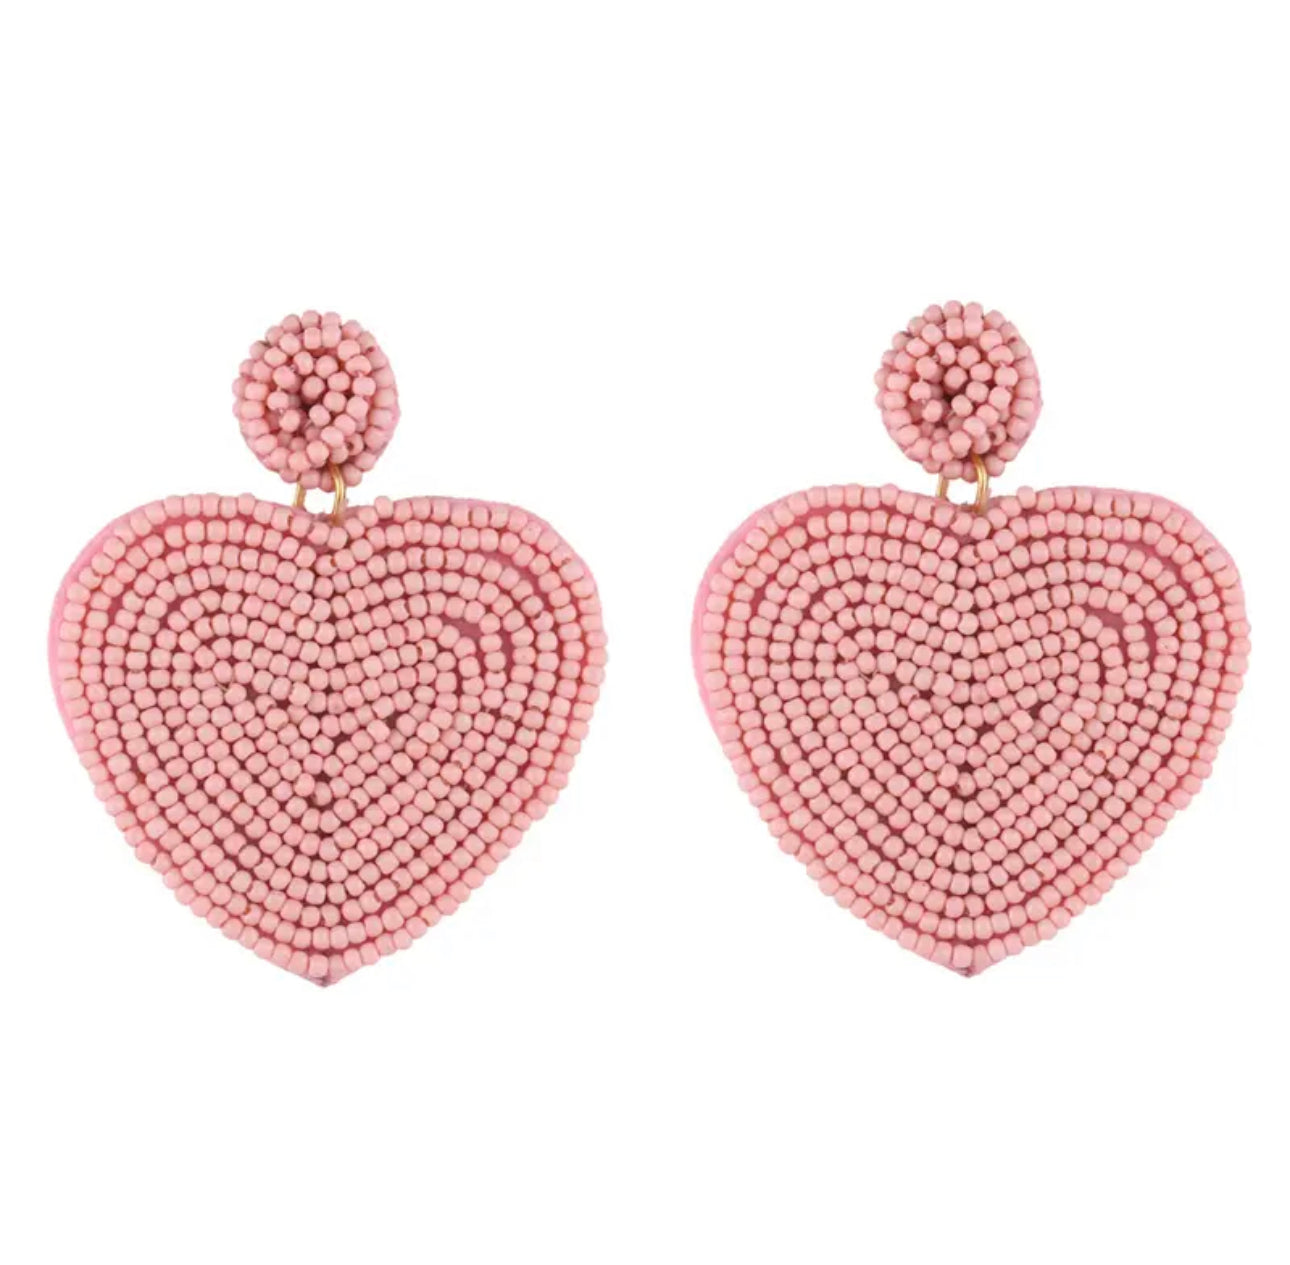 light pink heart earrings